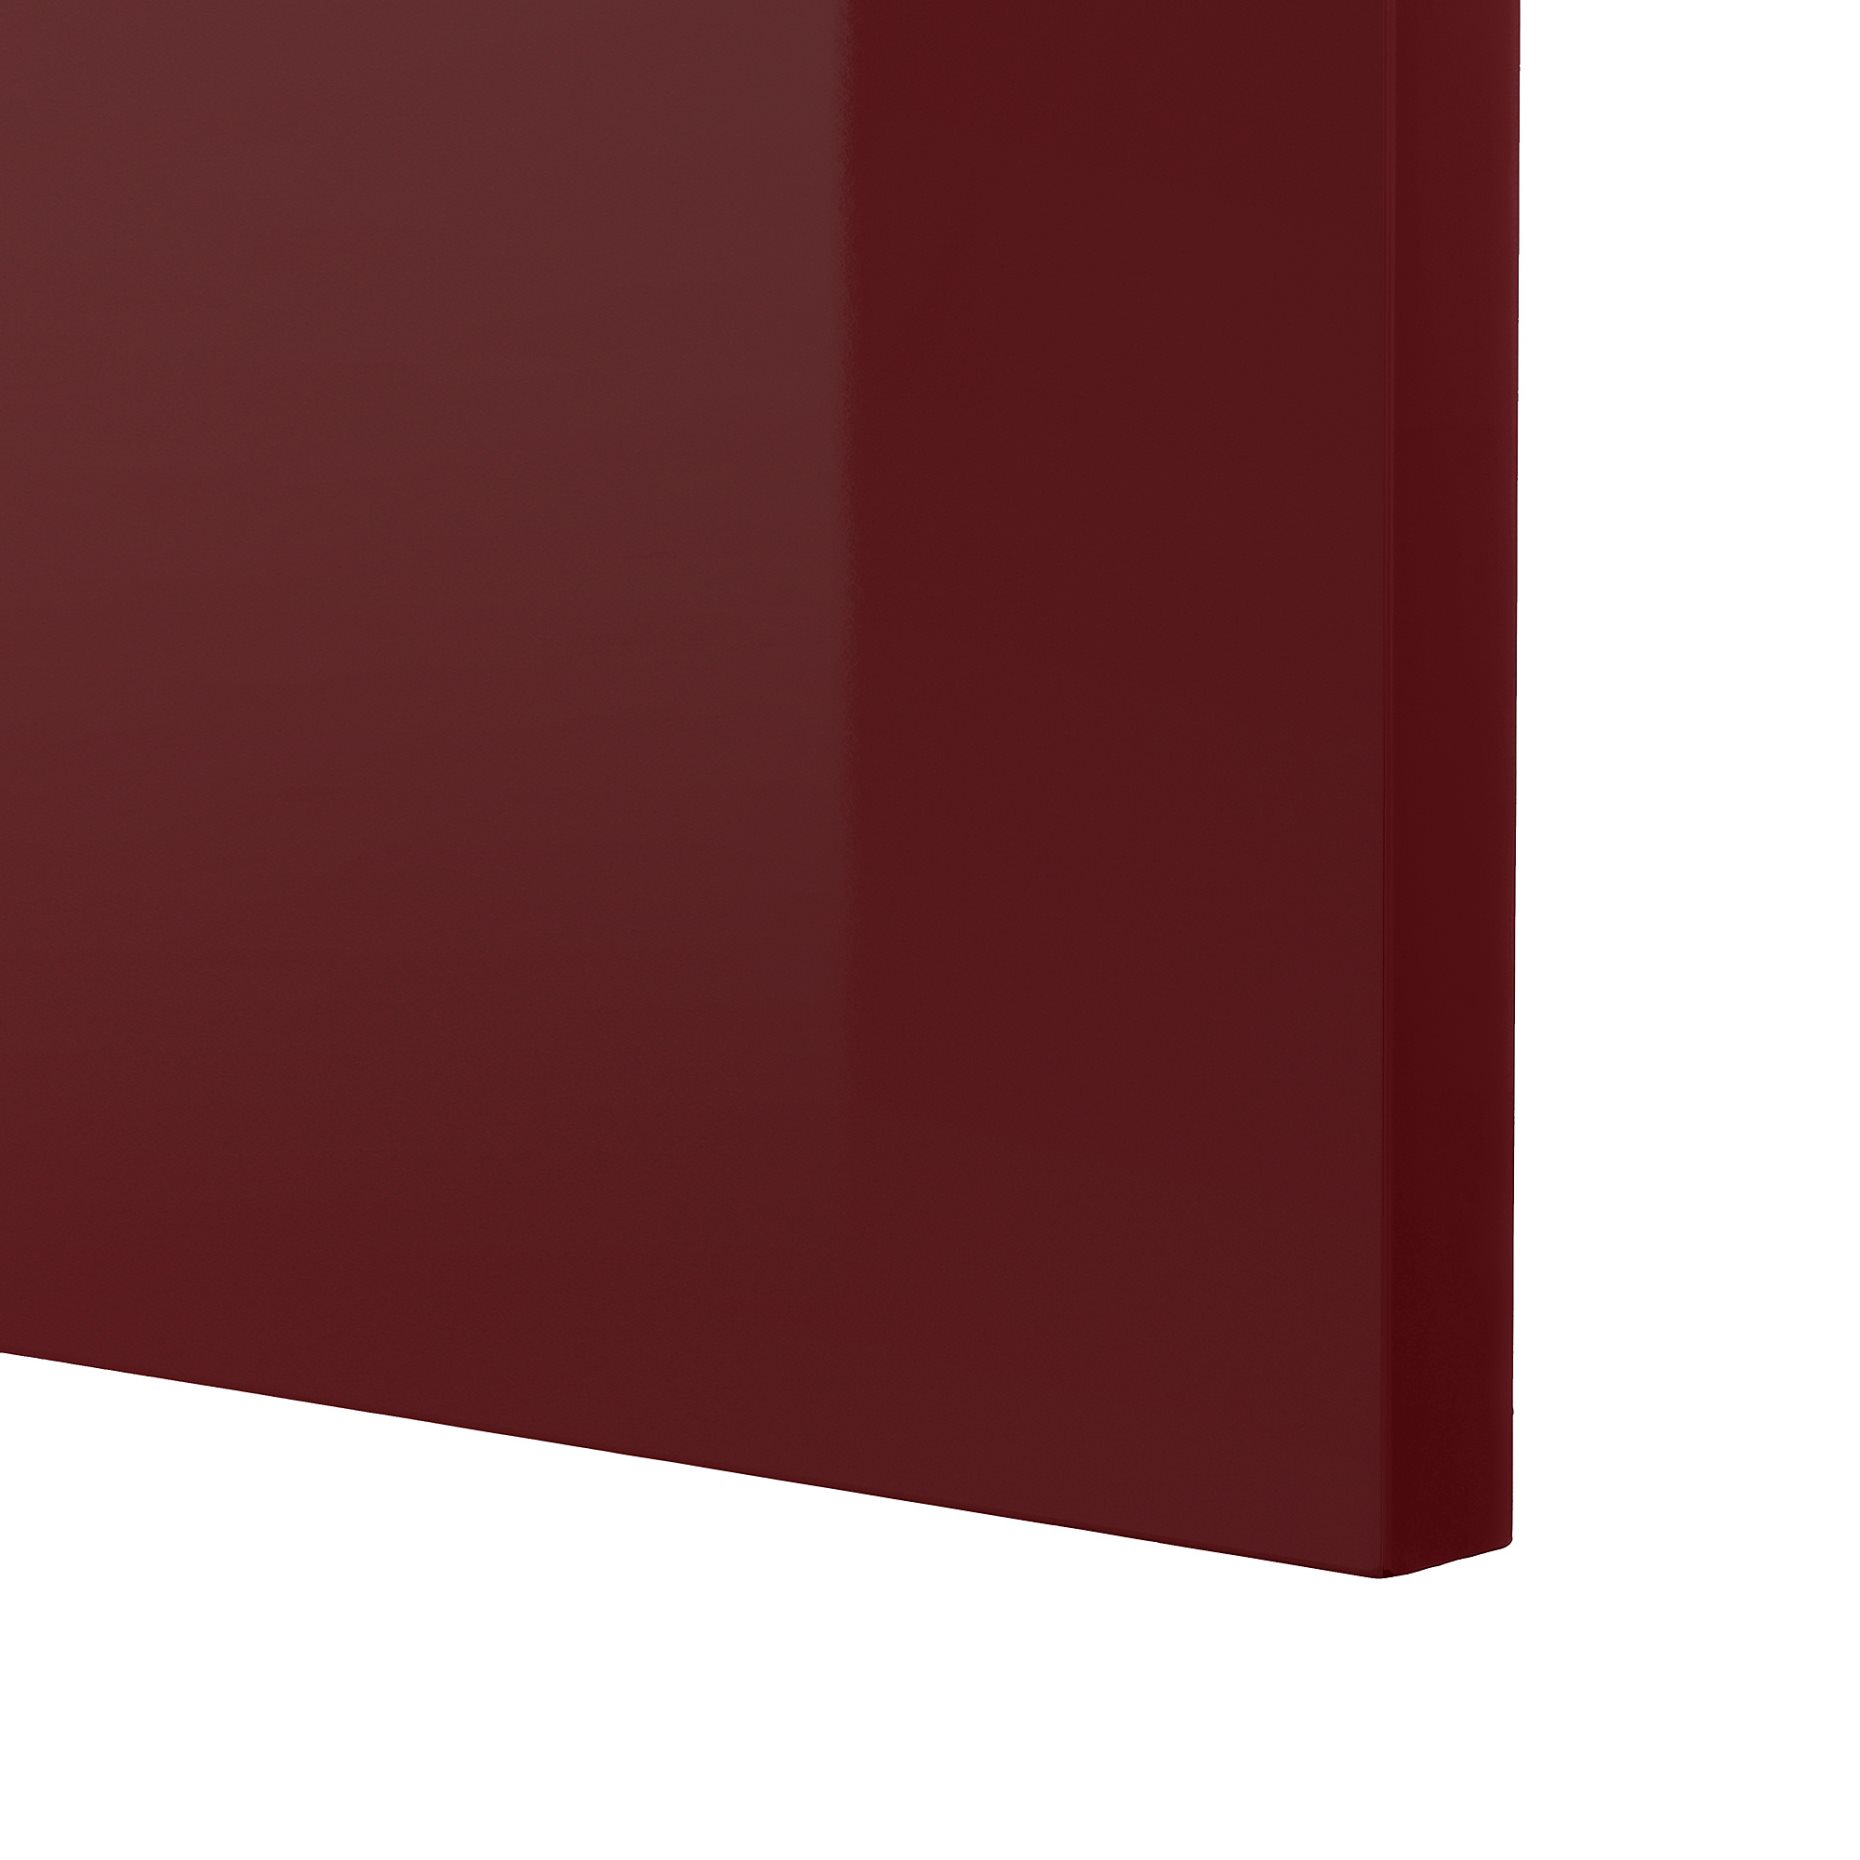 METOD, ψηλό ντουλάπι με εσωτερικά εξάρτηματα για τα είδη καθαρισμού, 40x60x220 cm, 094.563.40